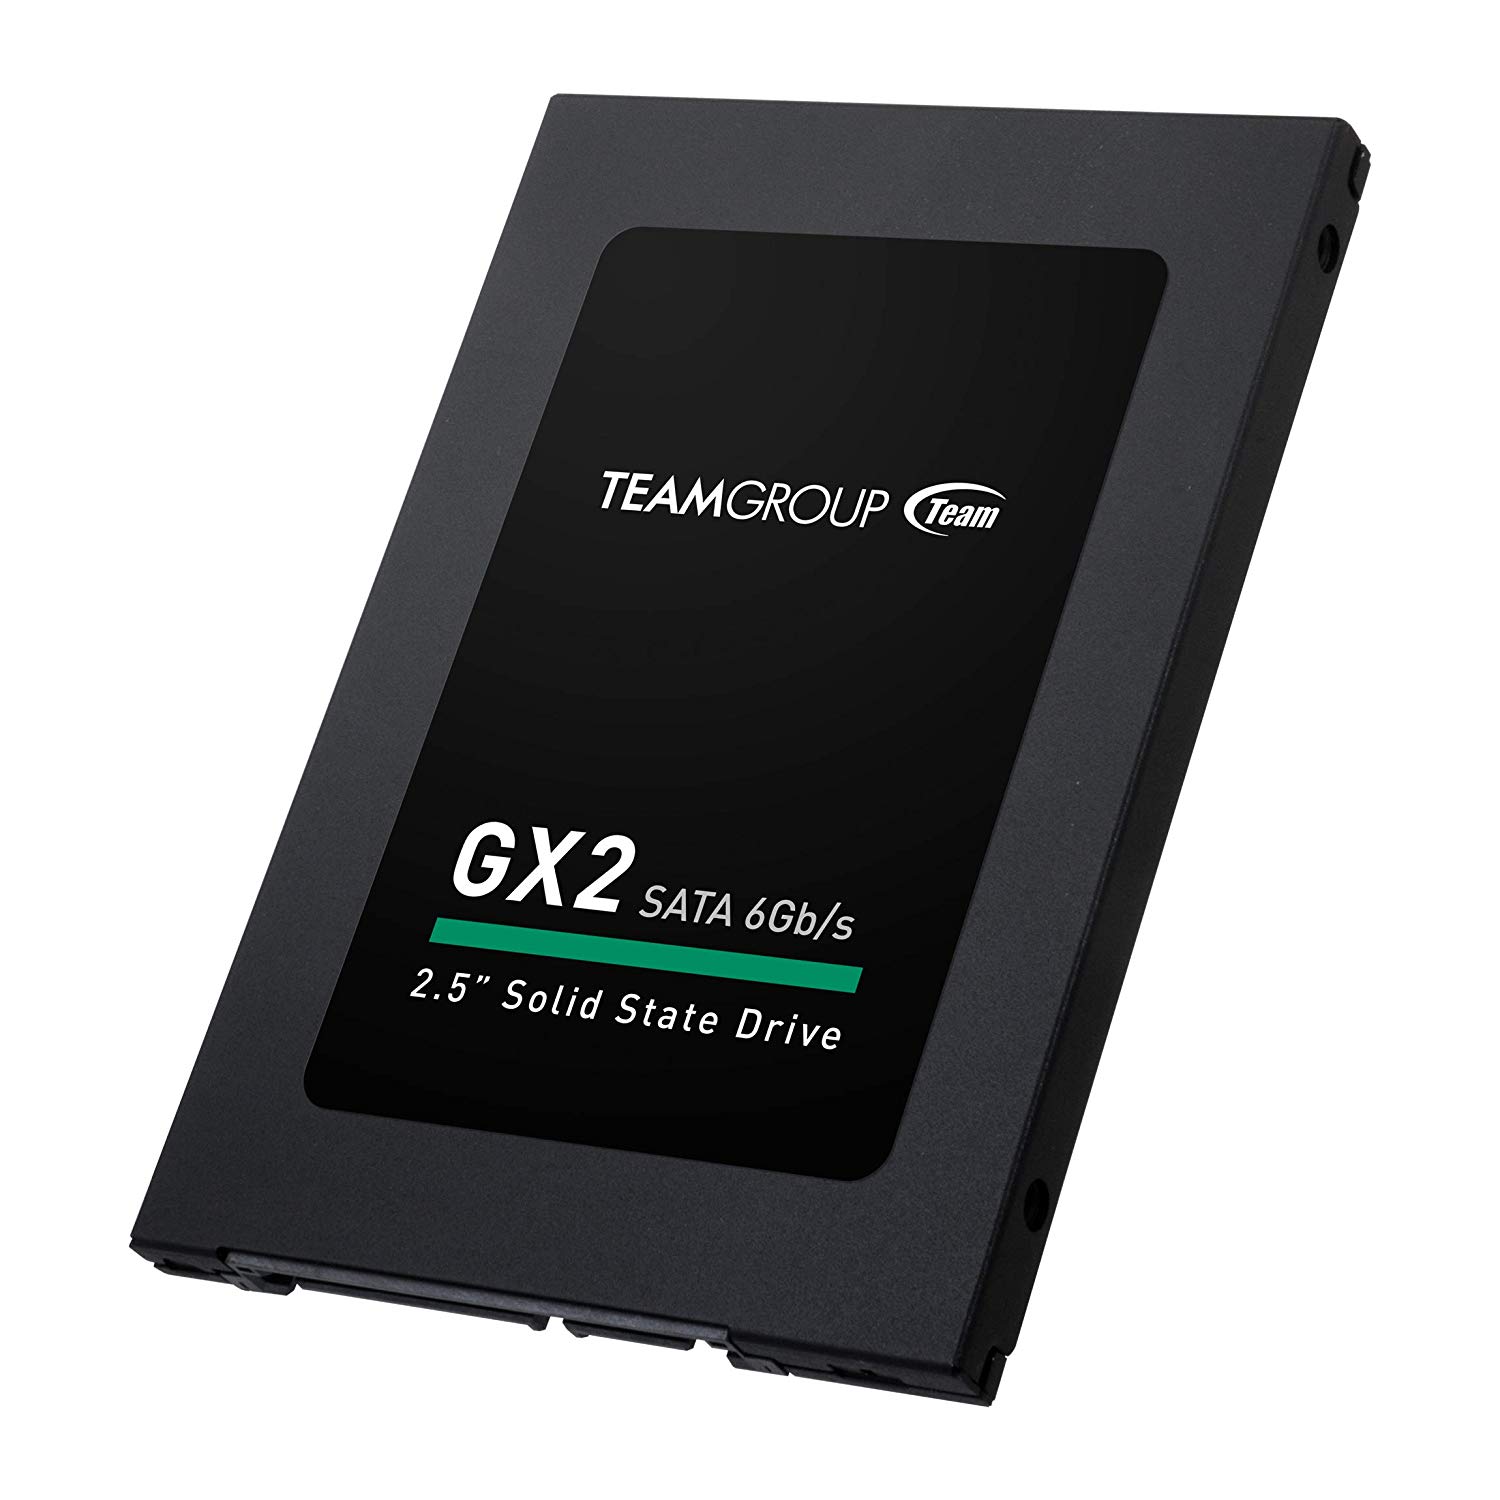 حافظه اس اس دی TeamGroup GX2 1TB-2